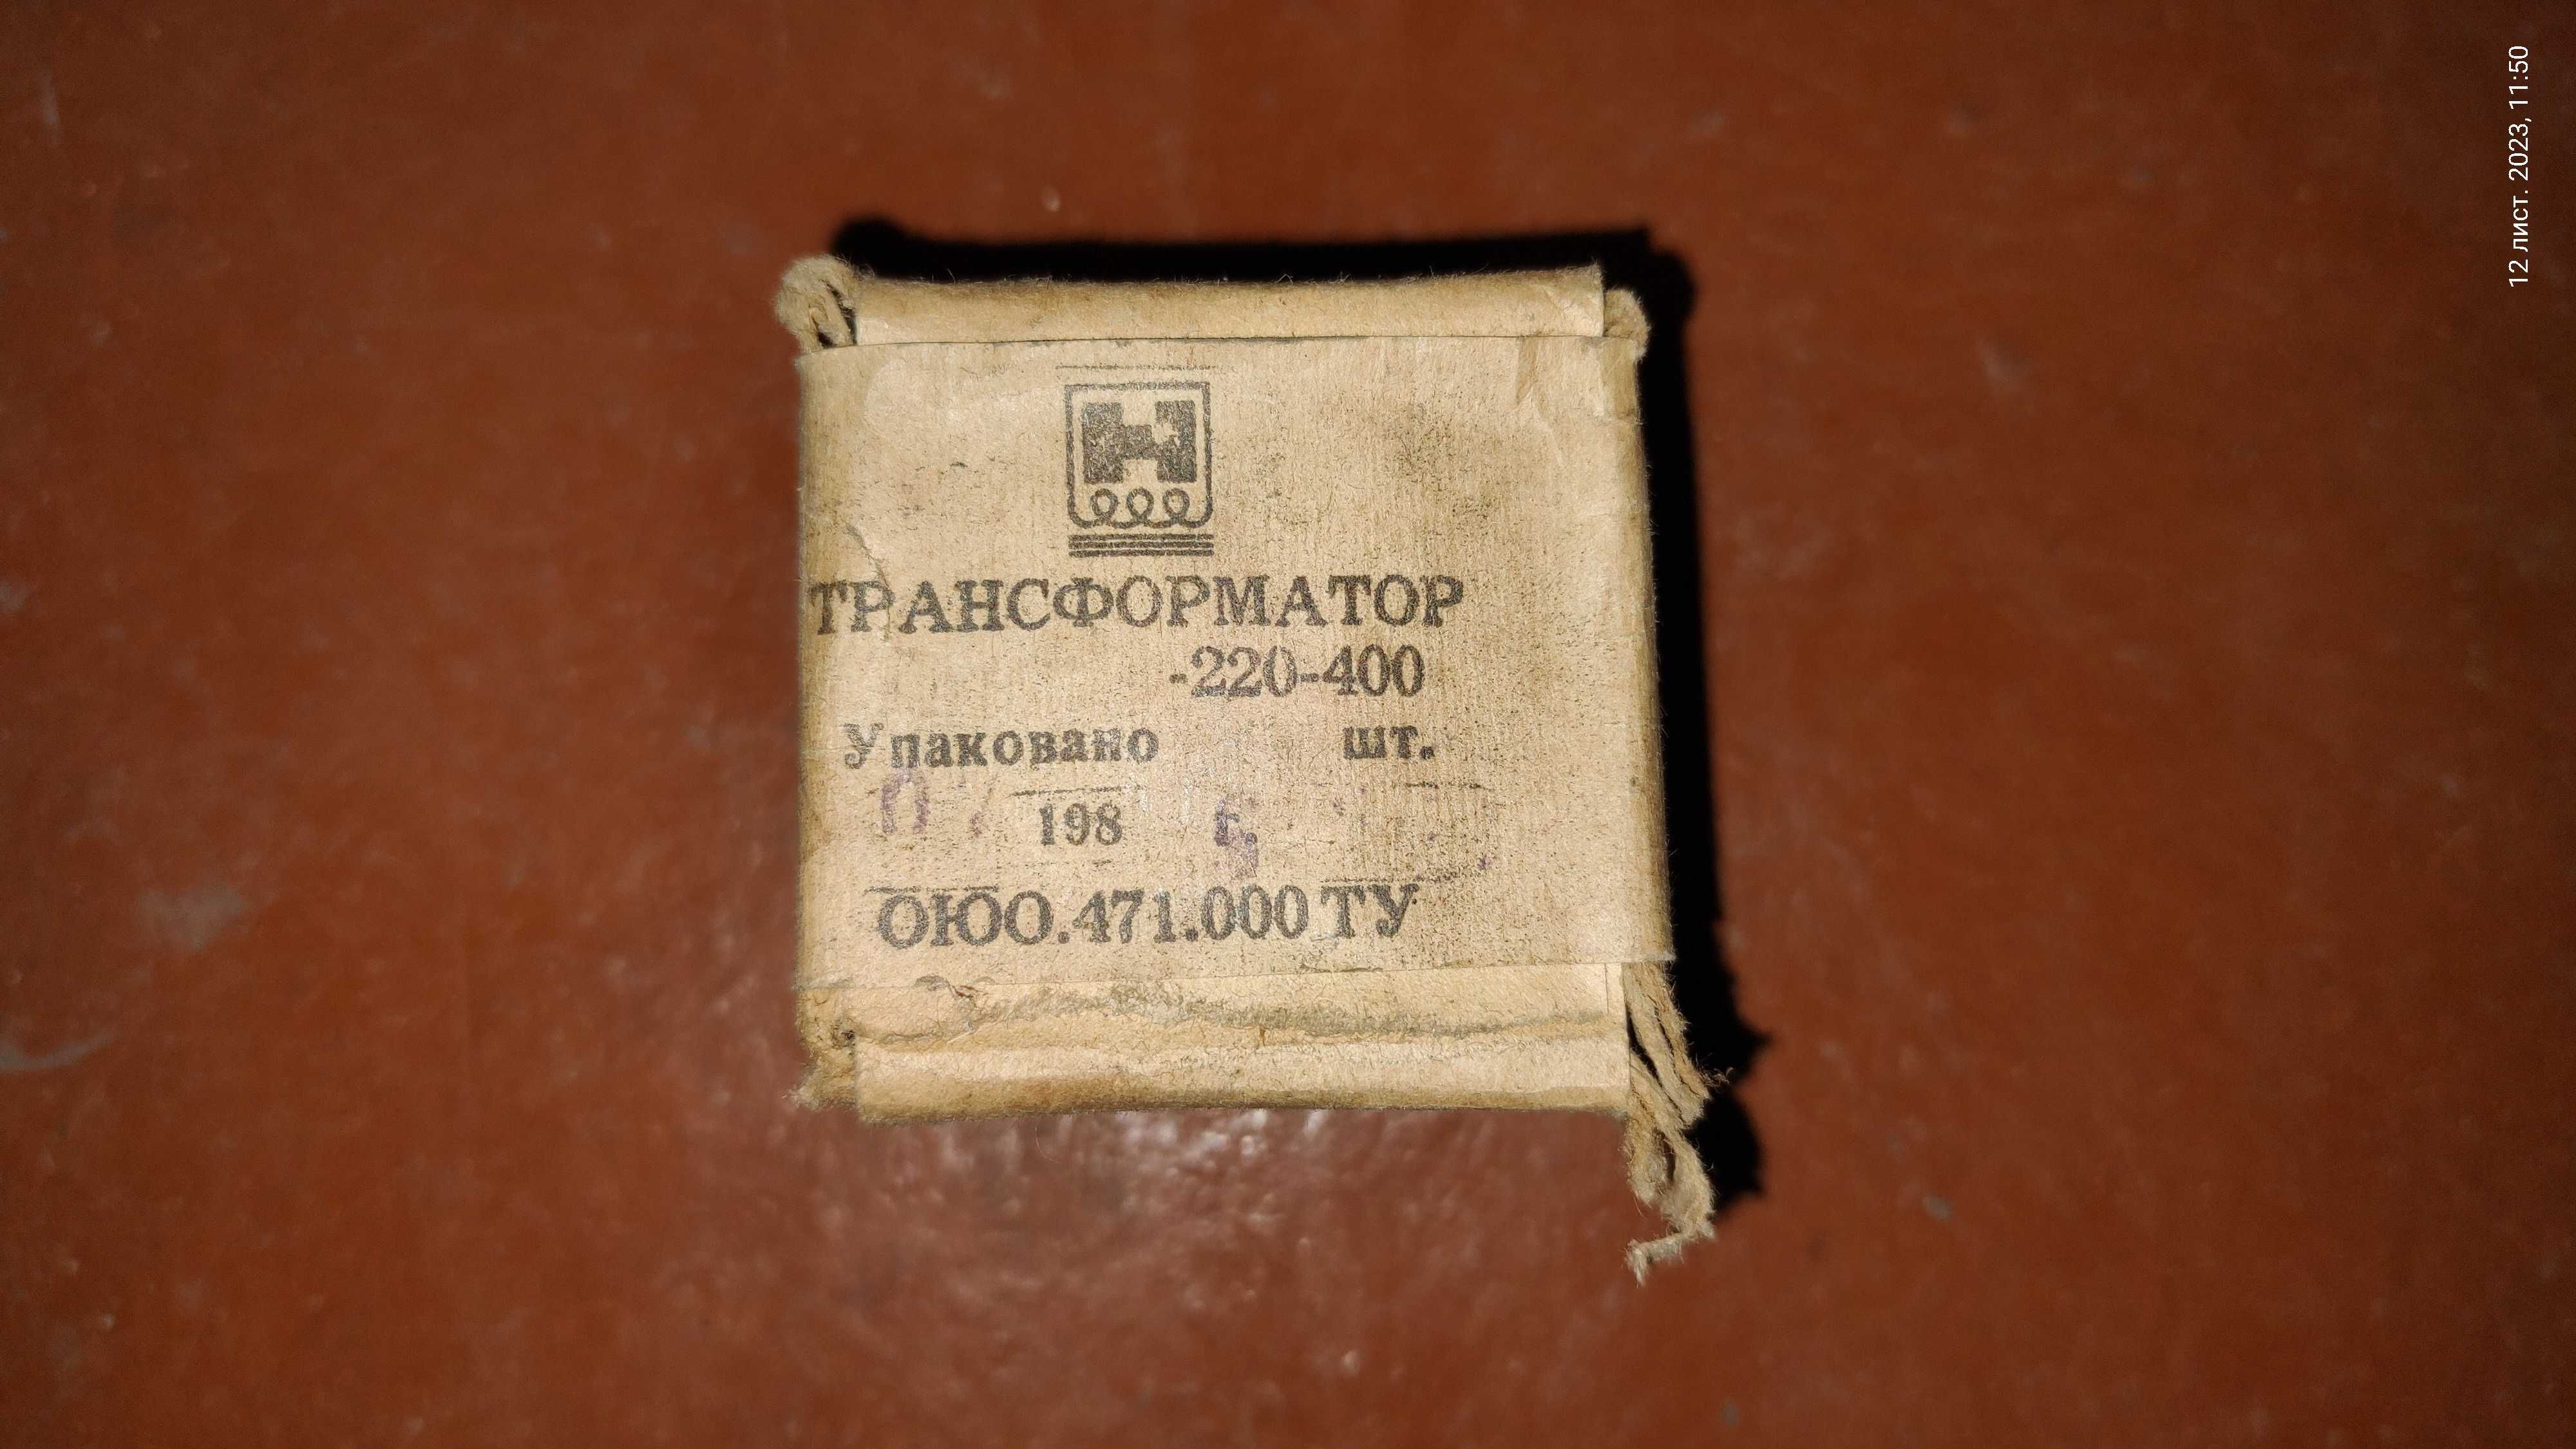 Трансформатор запакований із СРСР